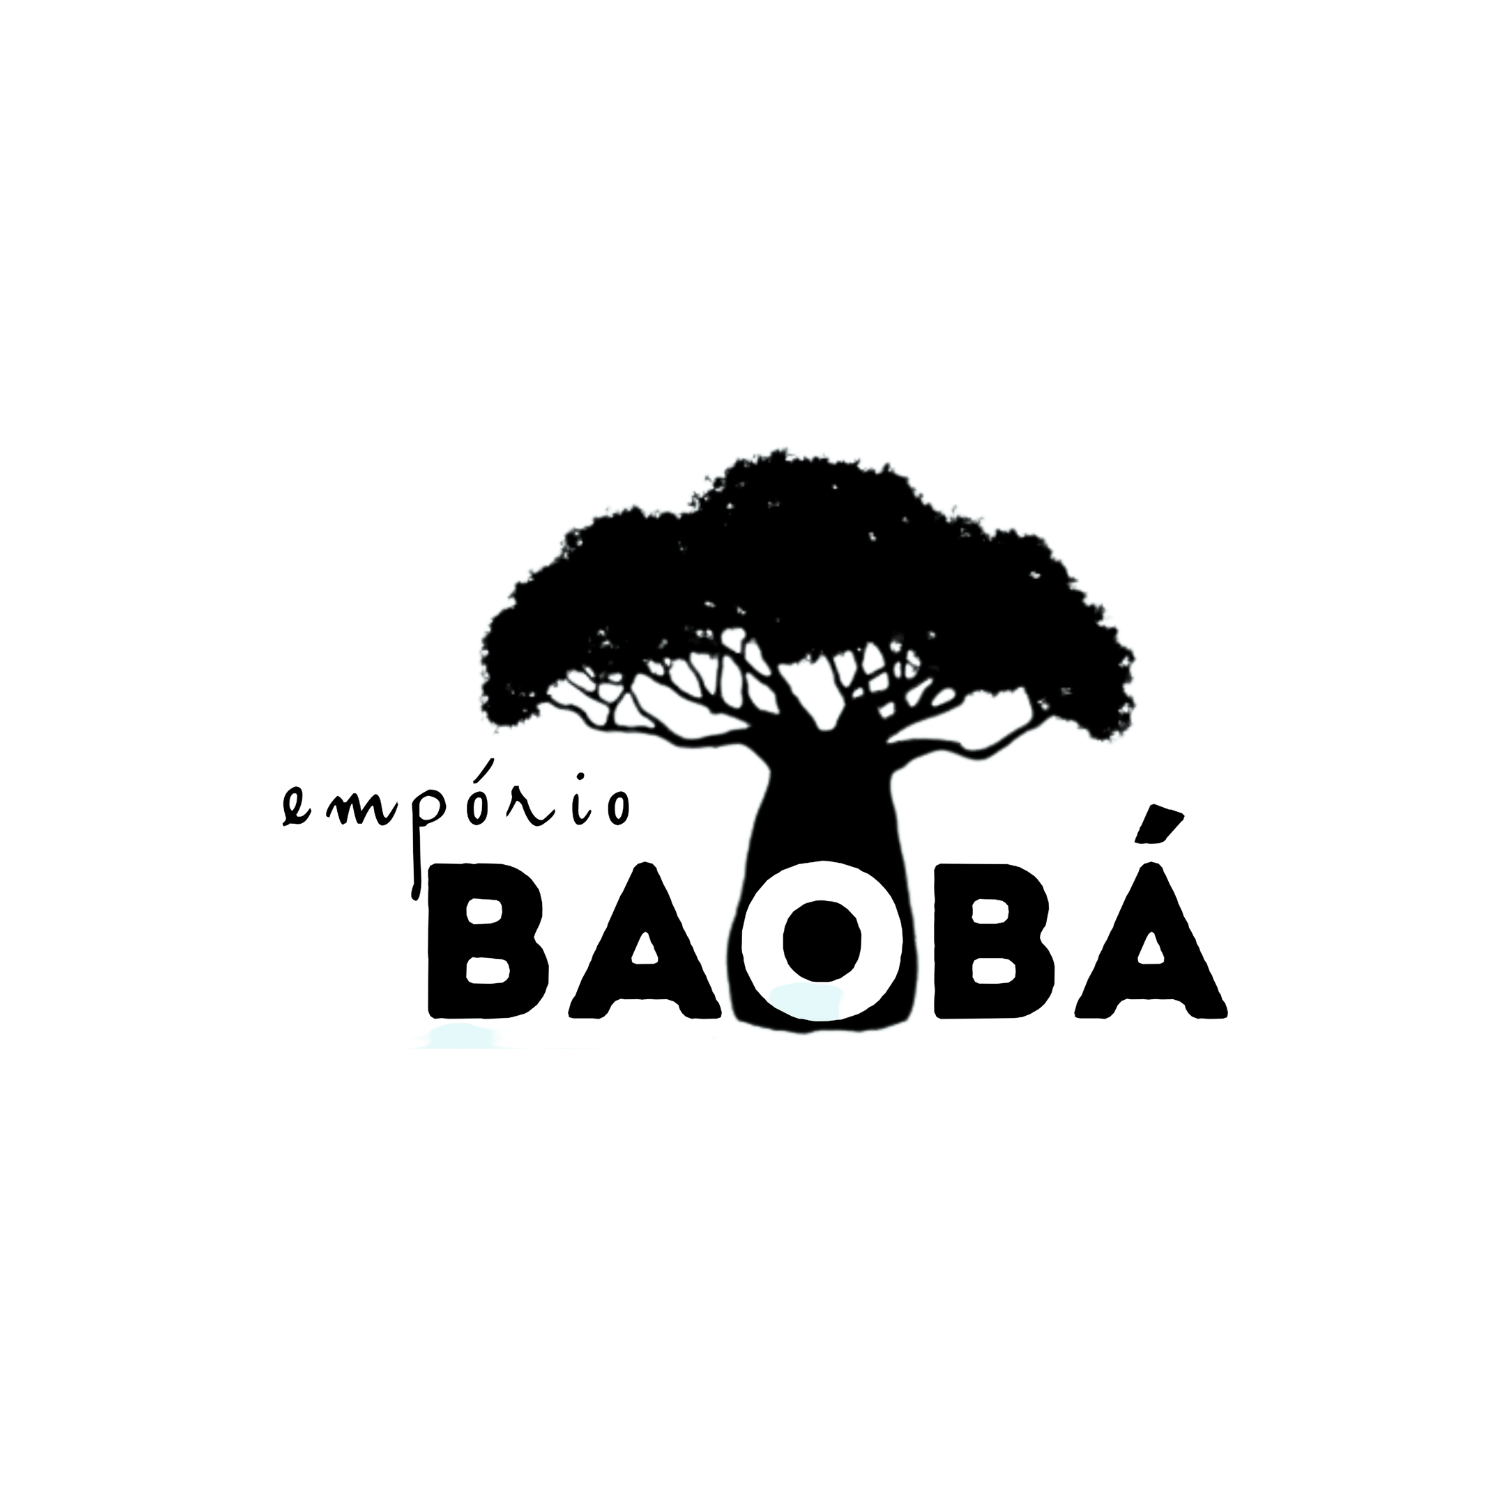 Empório Baobá